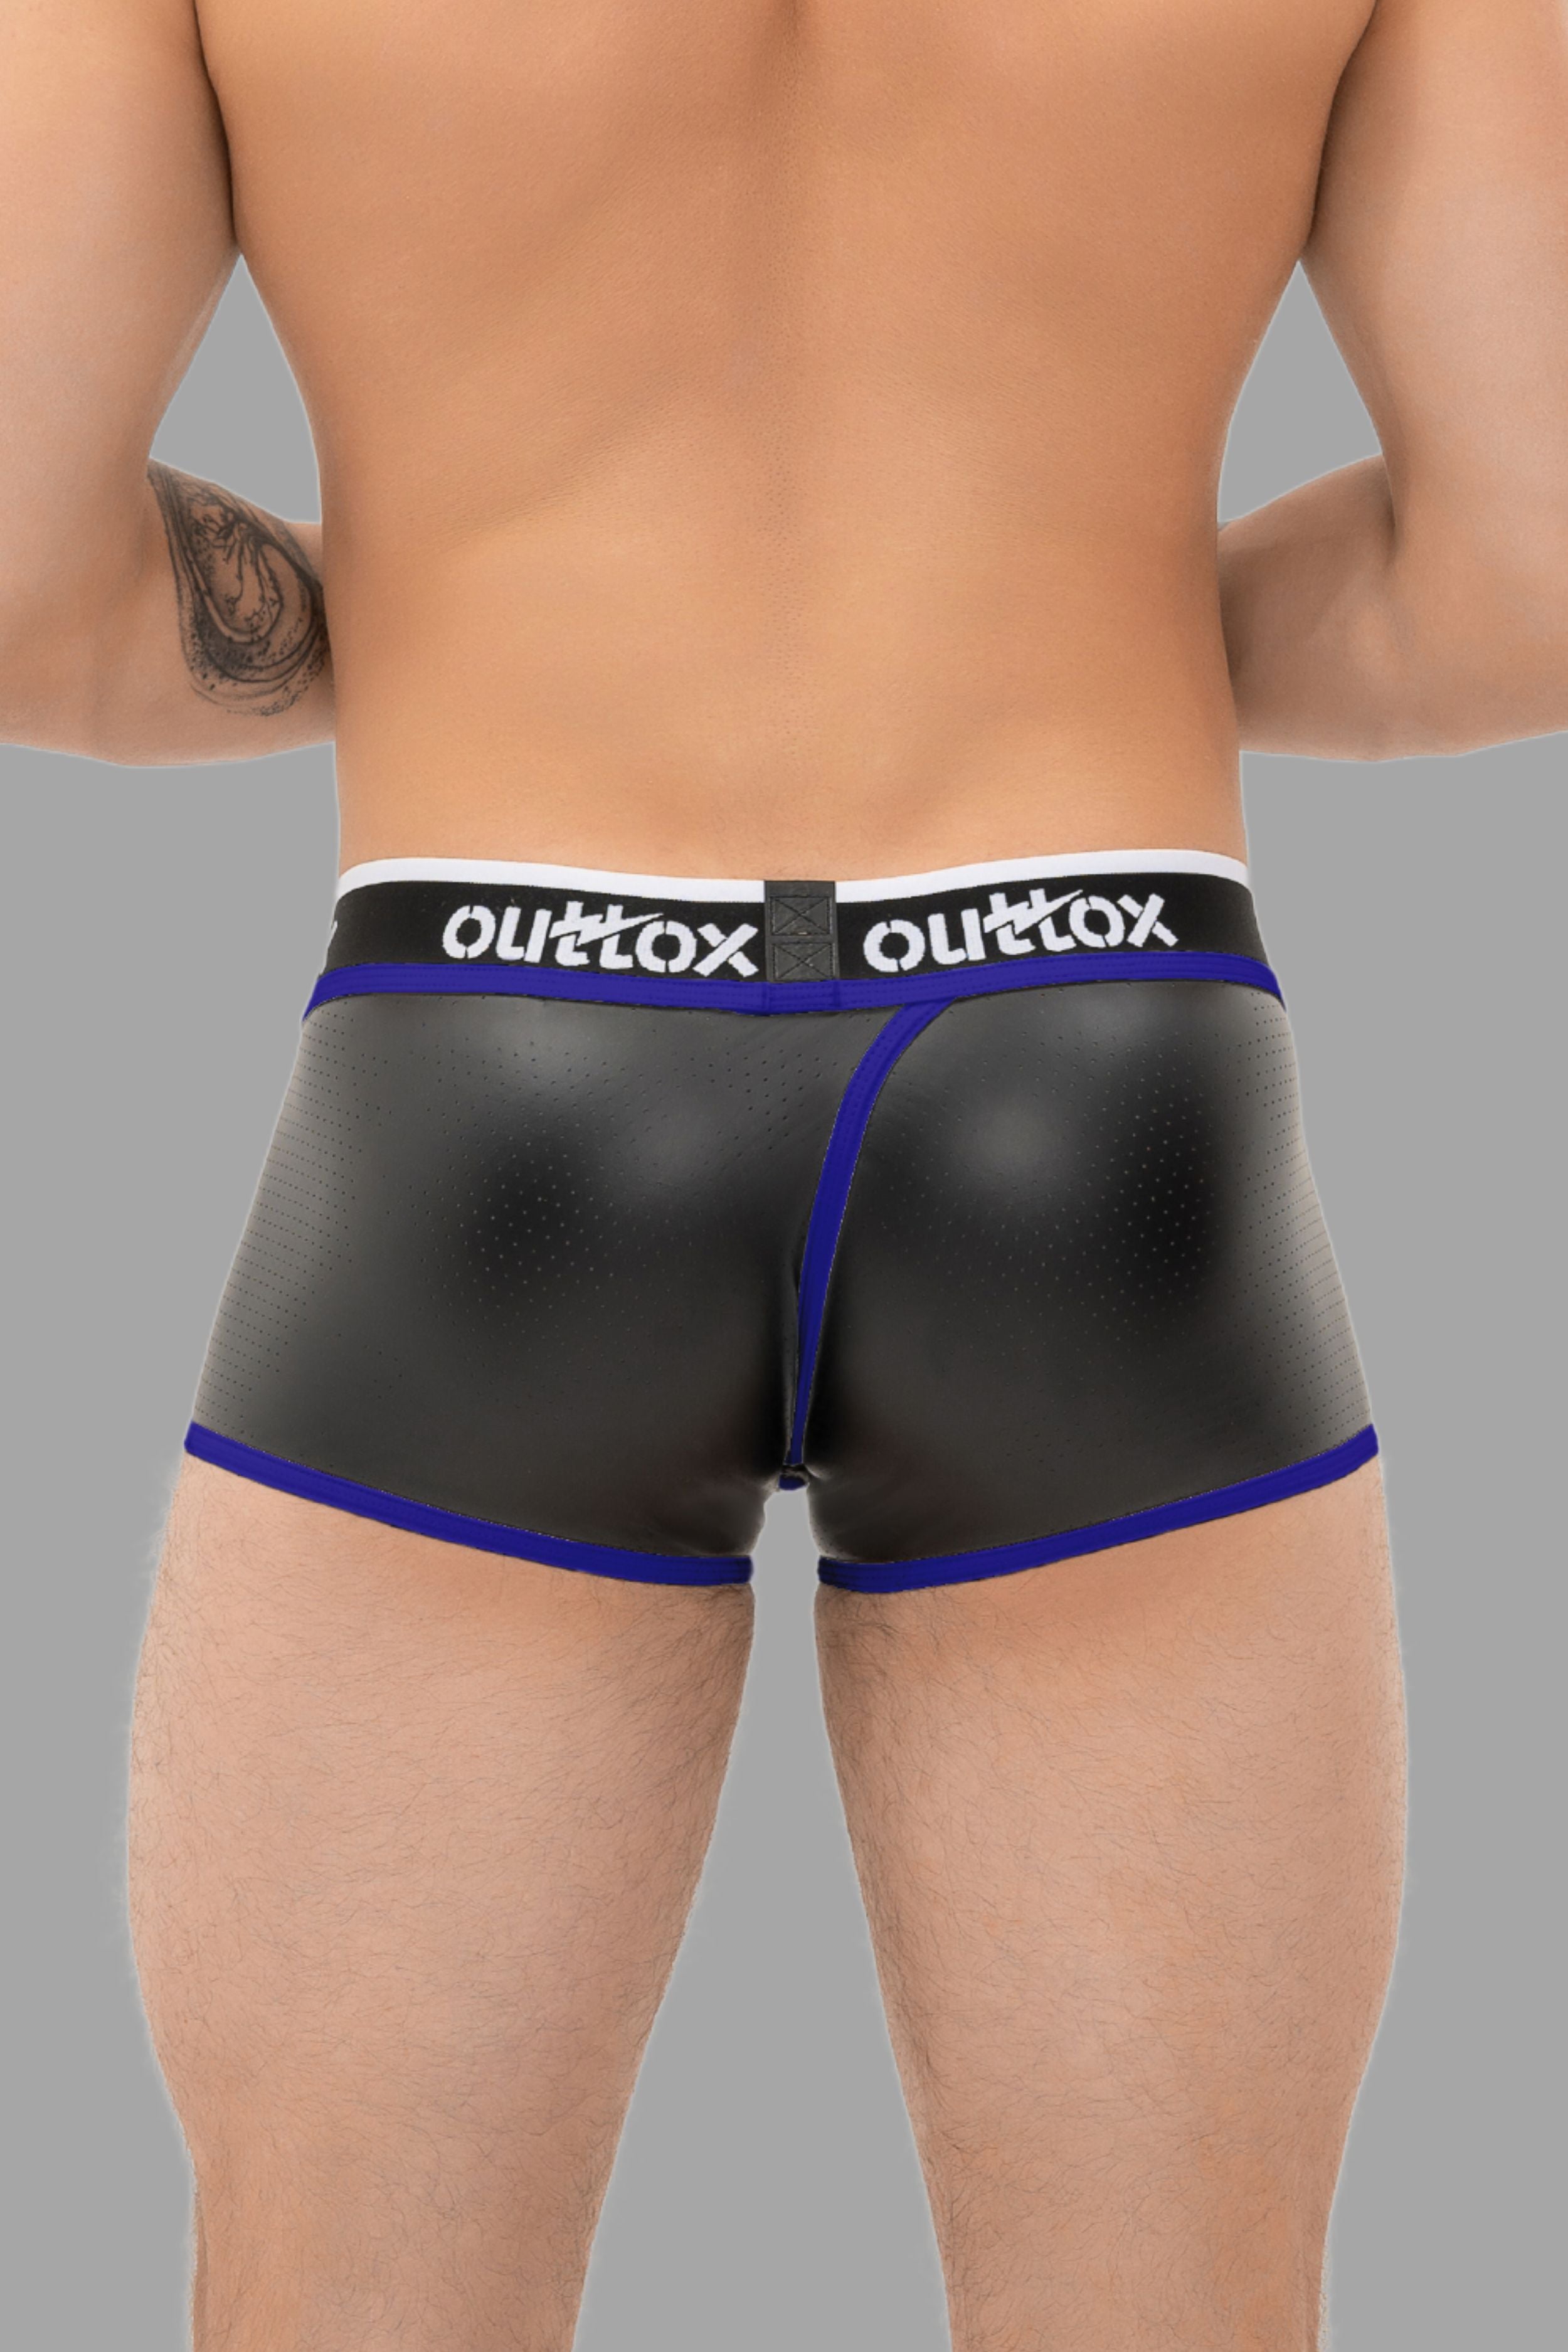 Outtox. Pantalones cortos traseros envueltos con bragueta a presión. Negro+Azul &